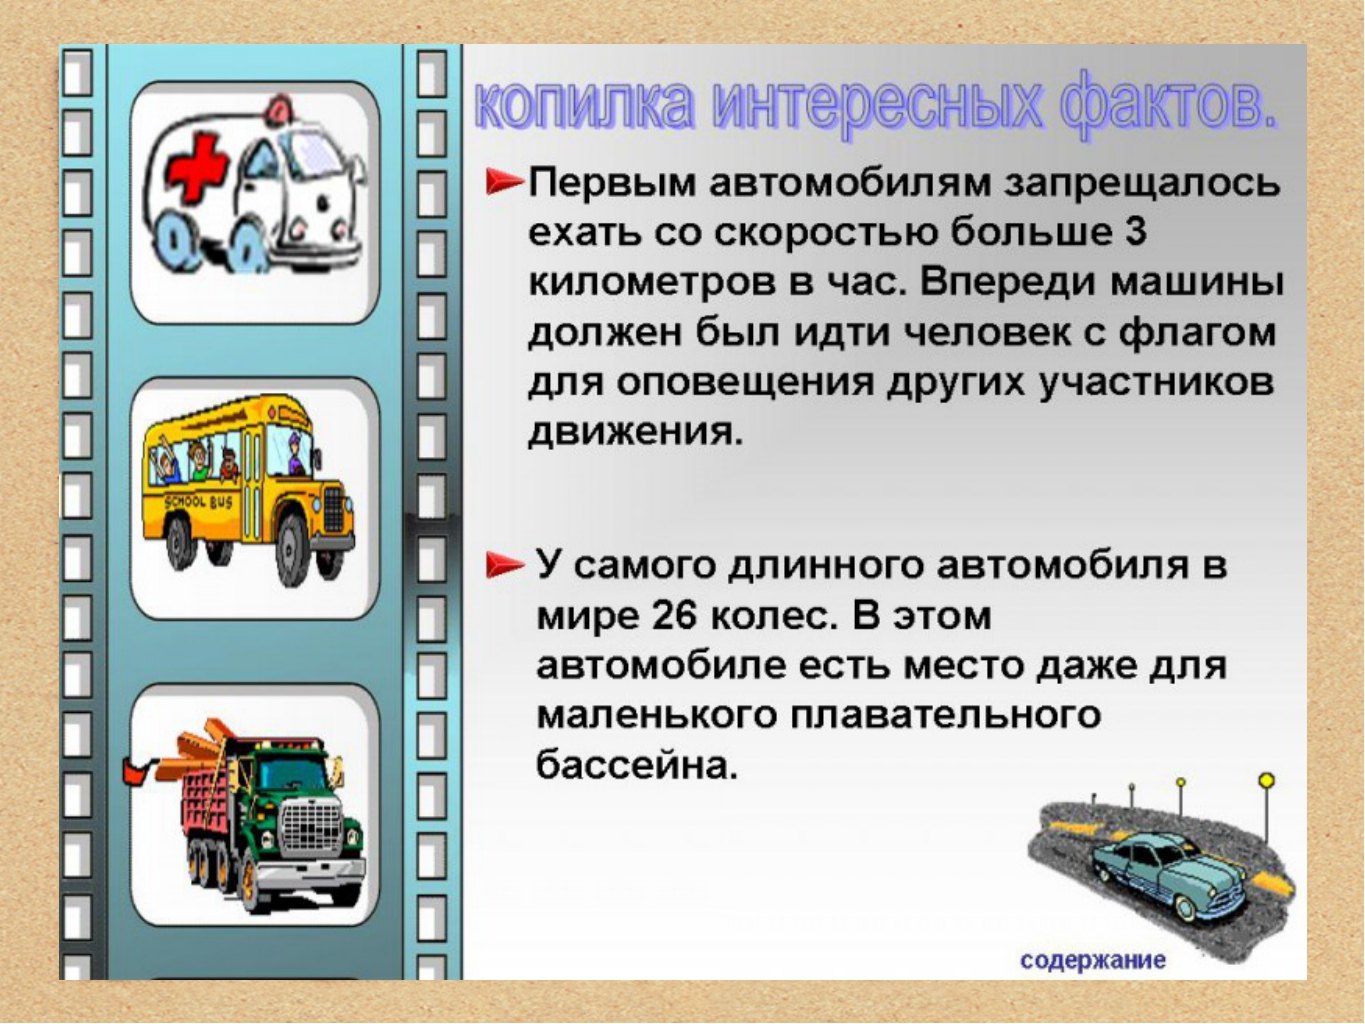 Презентация почему в автомобиле и поезде. Детям о транспорте. Интересные истории про транспорт. Интересная информация про транспорт. Интересные факты о транспорте для детей.